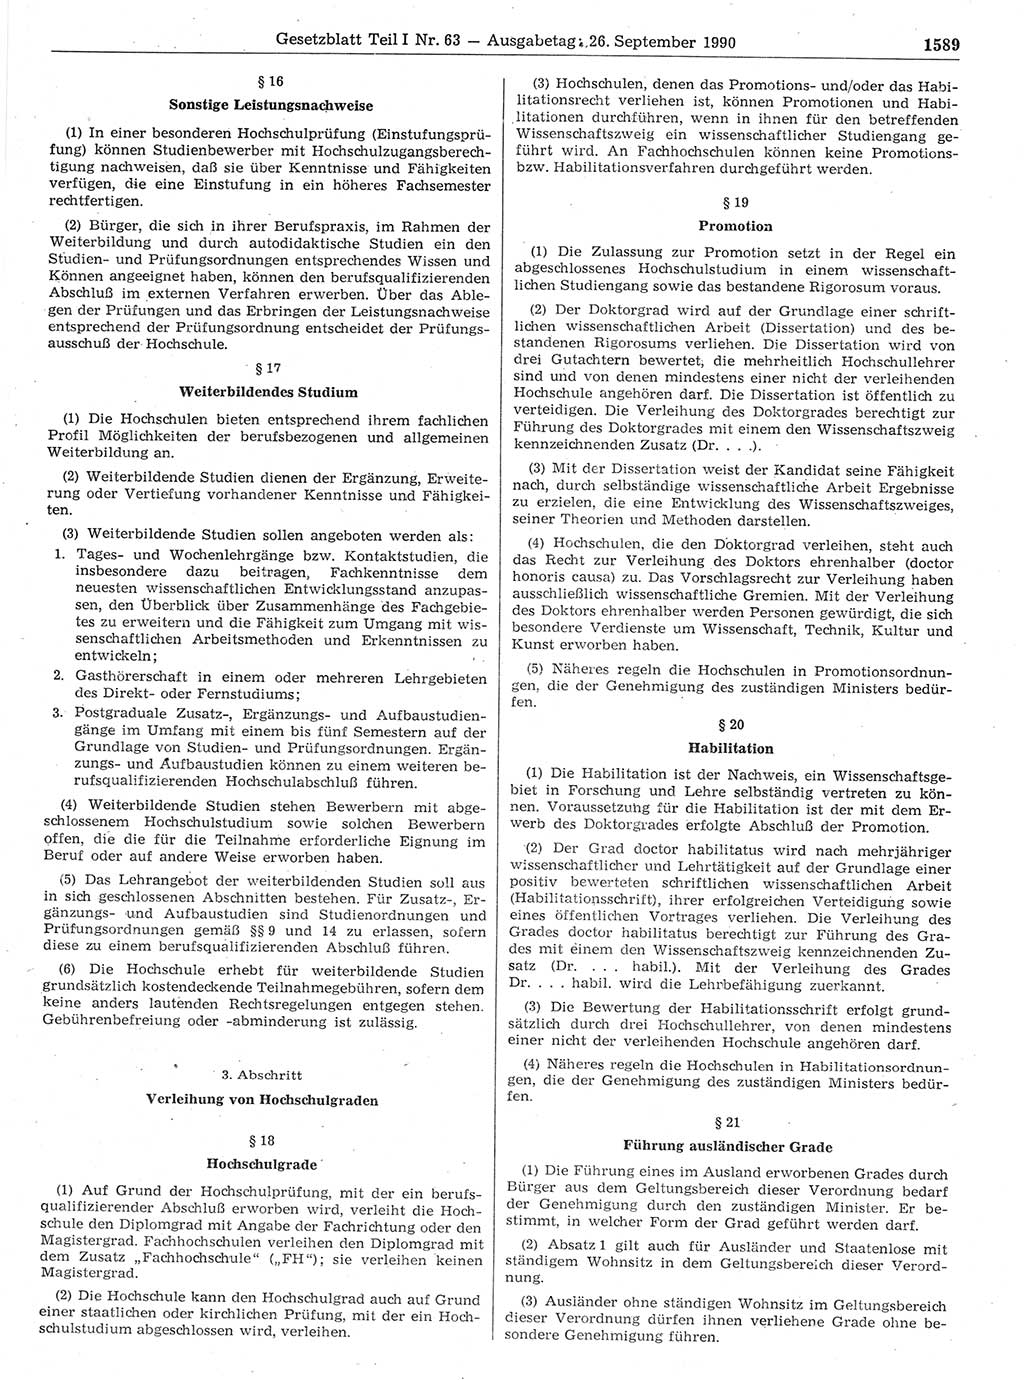 Gesetzblatt (GBl.) der Deutschen Demokratischen Republik (DDR) Teil Ⅰ 1990, Seite 1589 (GBl. DDR Ⅰ 1990, S. 1589)